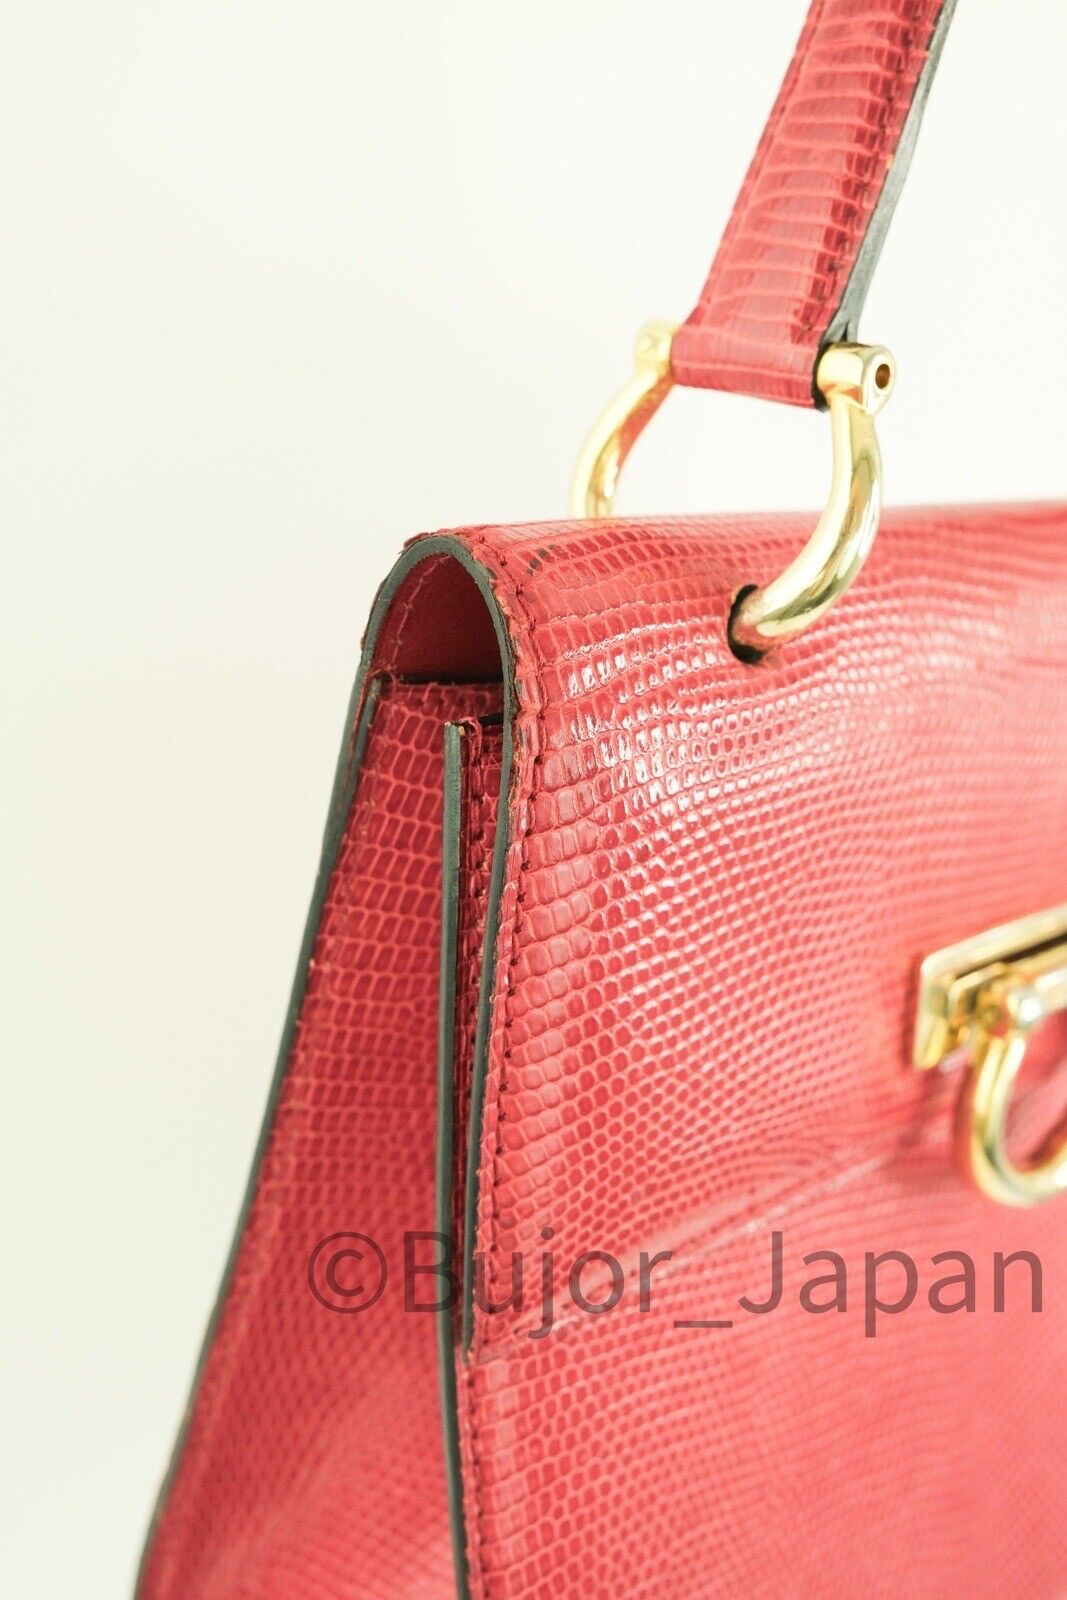 Celine Box bag Vintage Lizard leather Exotic Gancini Hardware Red, Made in France, Handbag shoulder bag, Vintage Handbag, Bag Leather Women